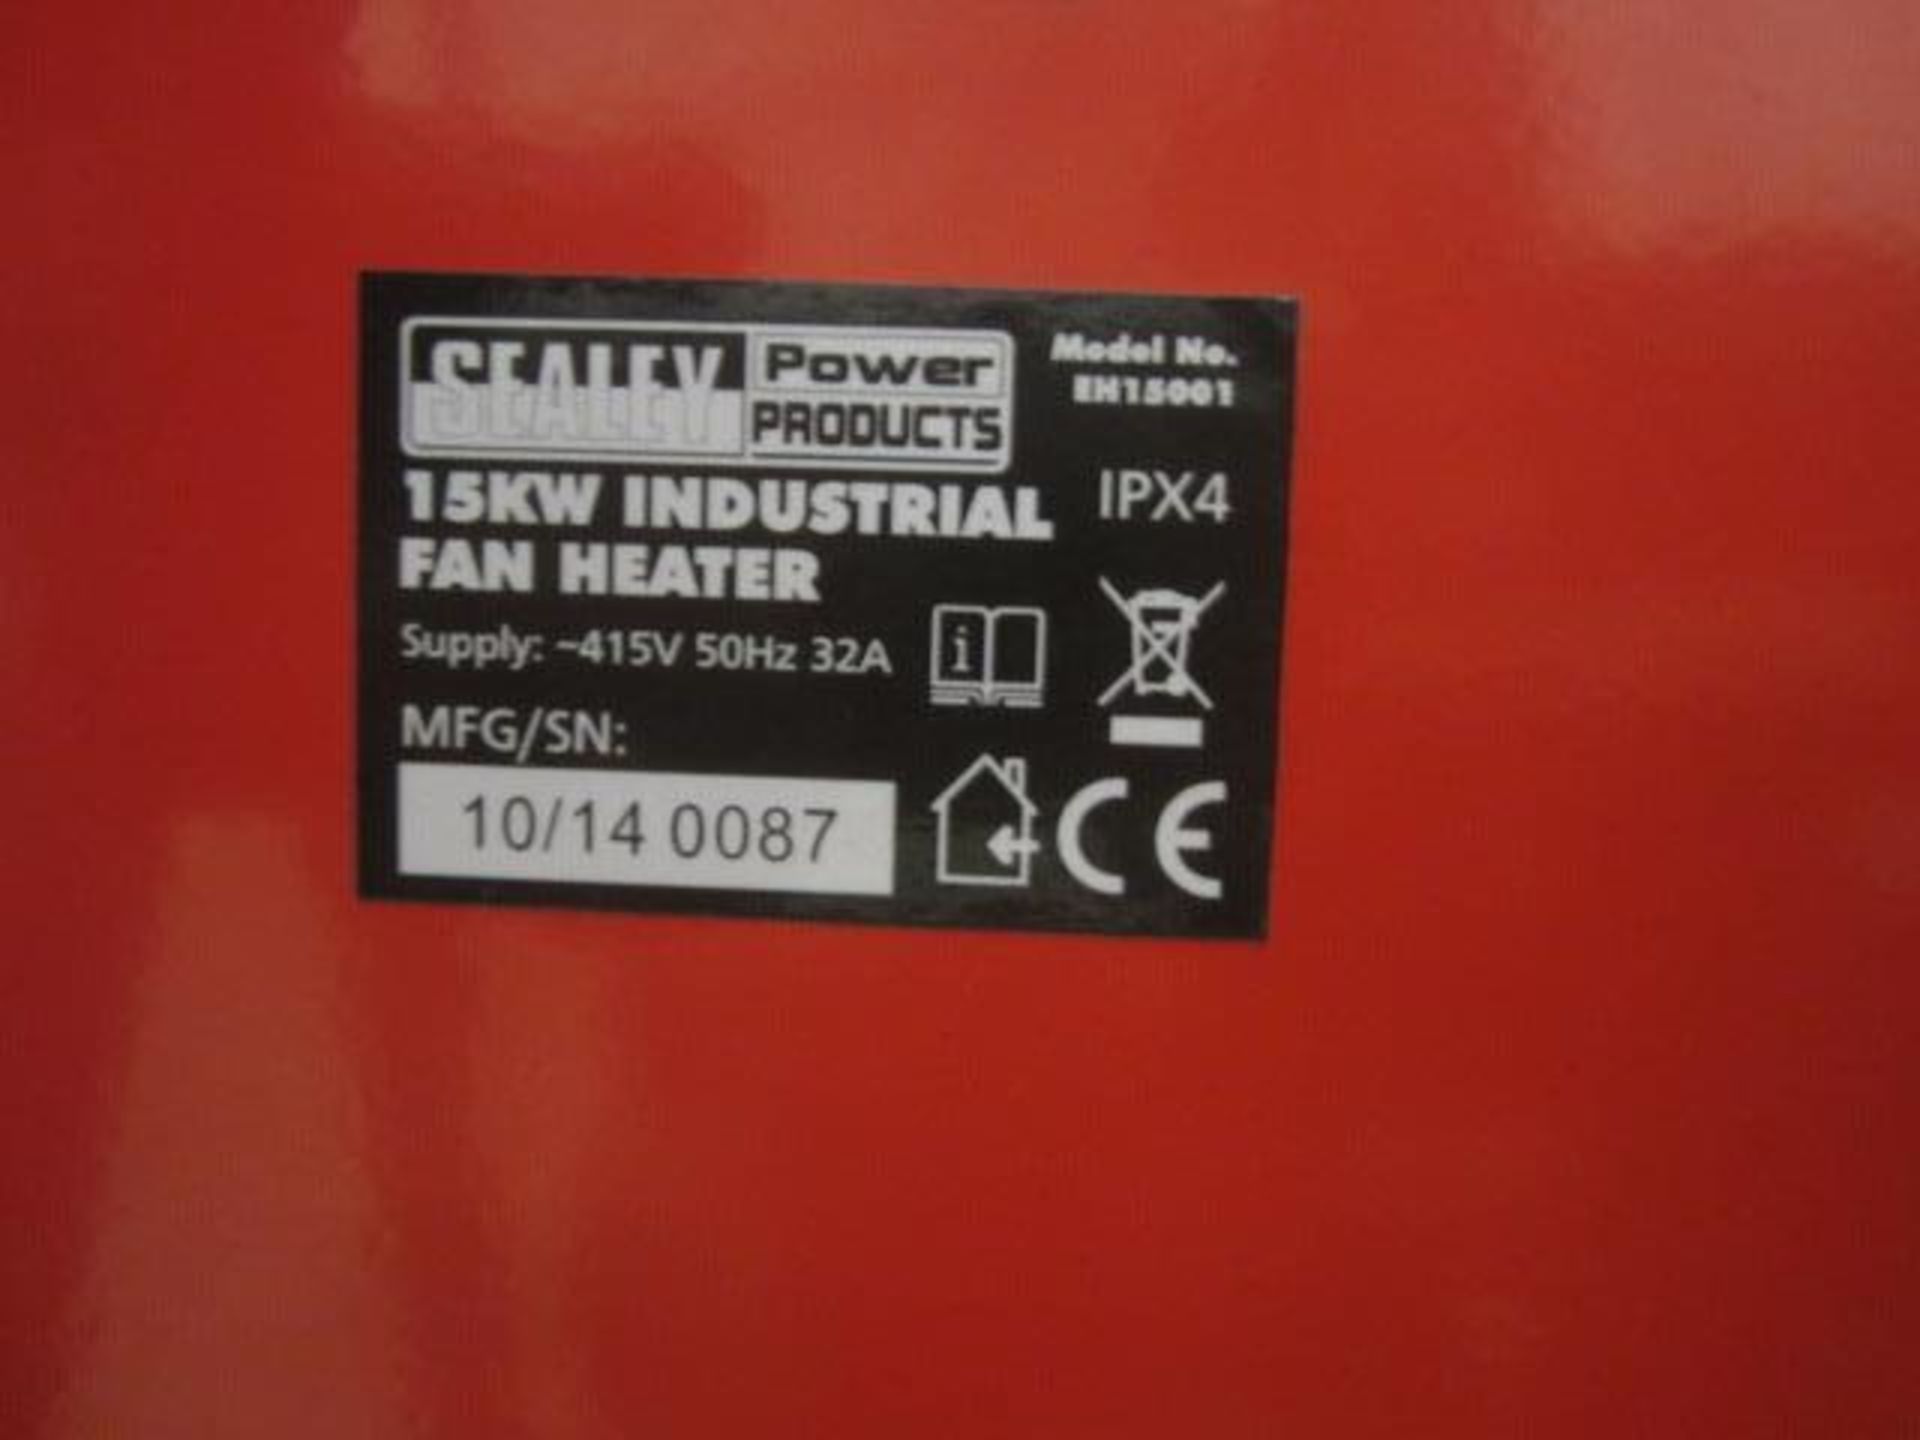 Sealey 15kw industrial fan heater - Image 3 of 4